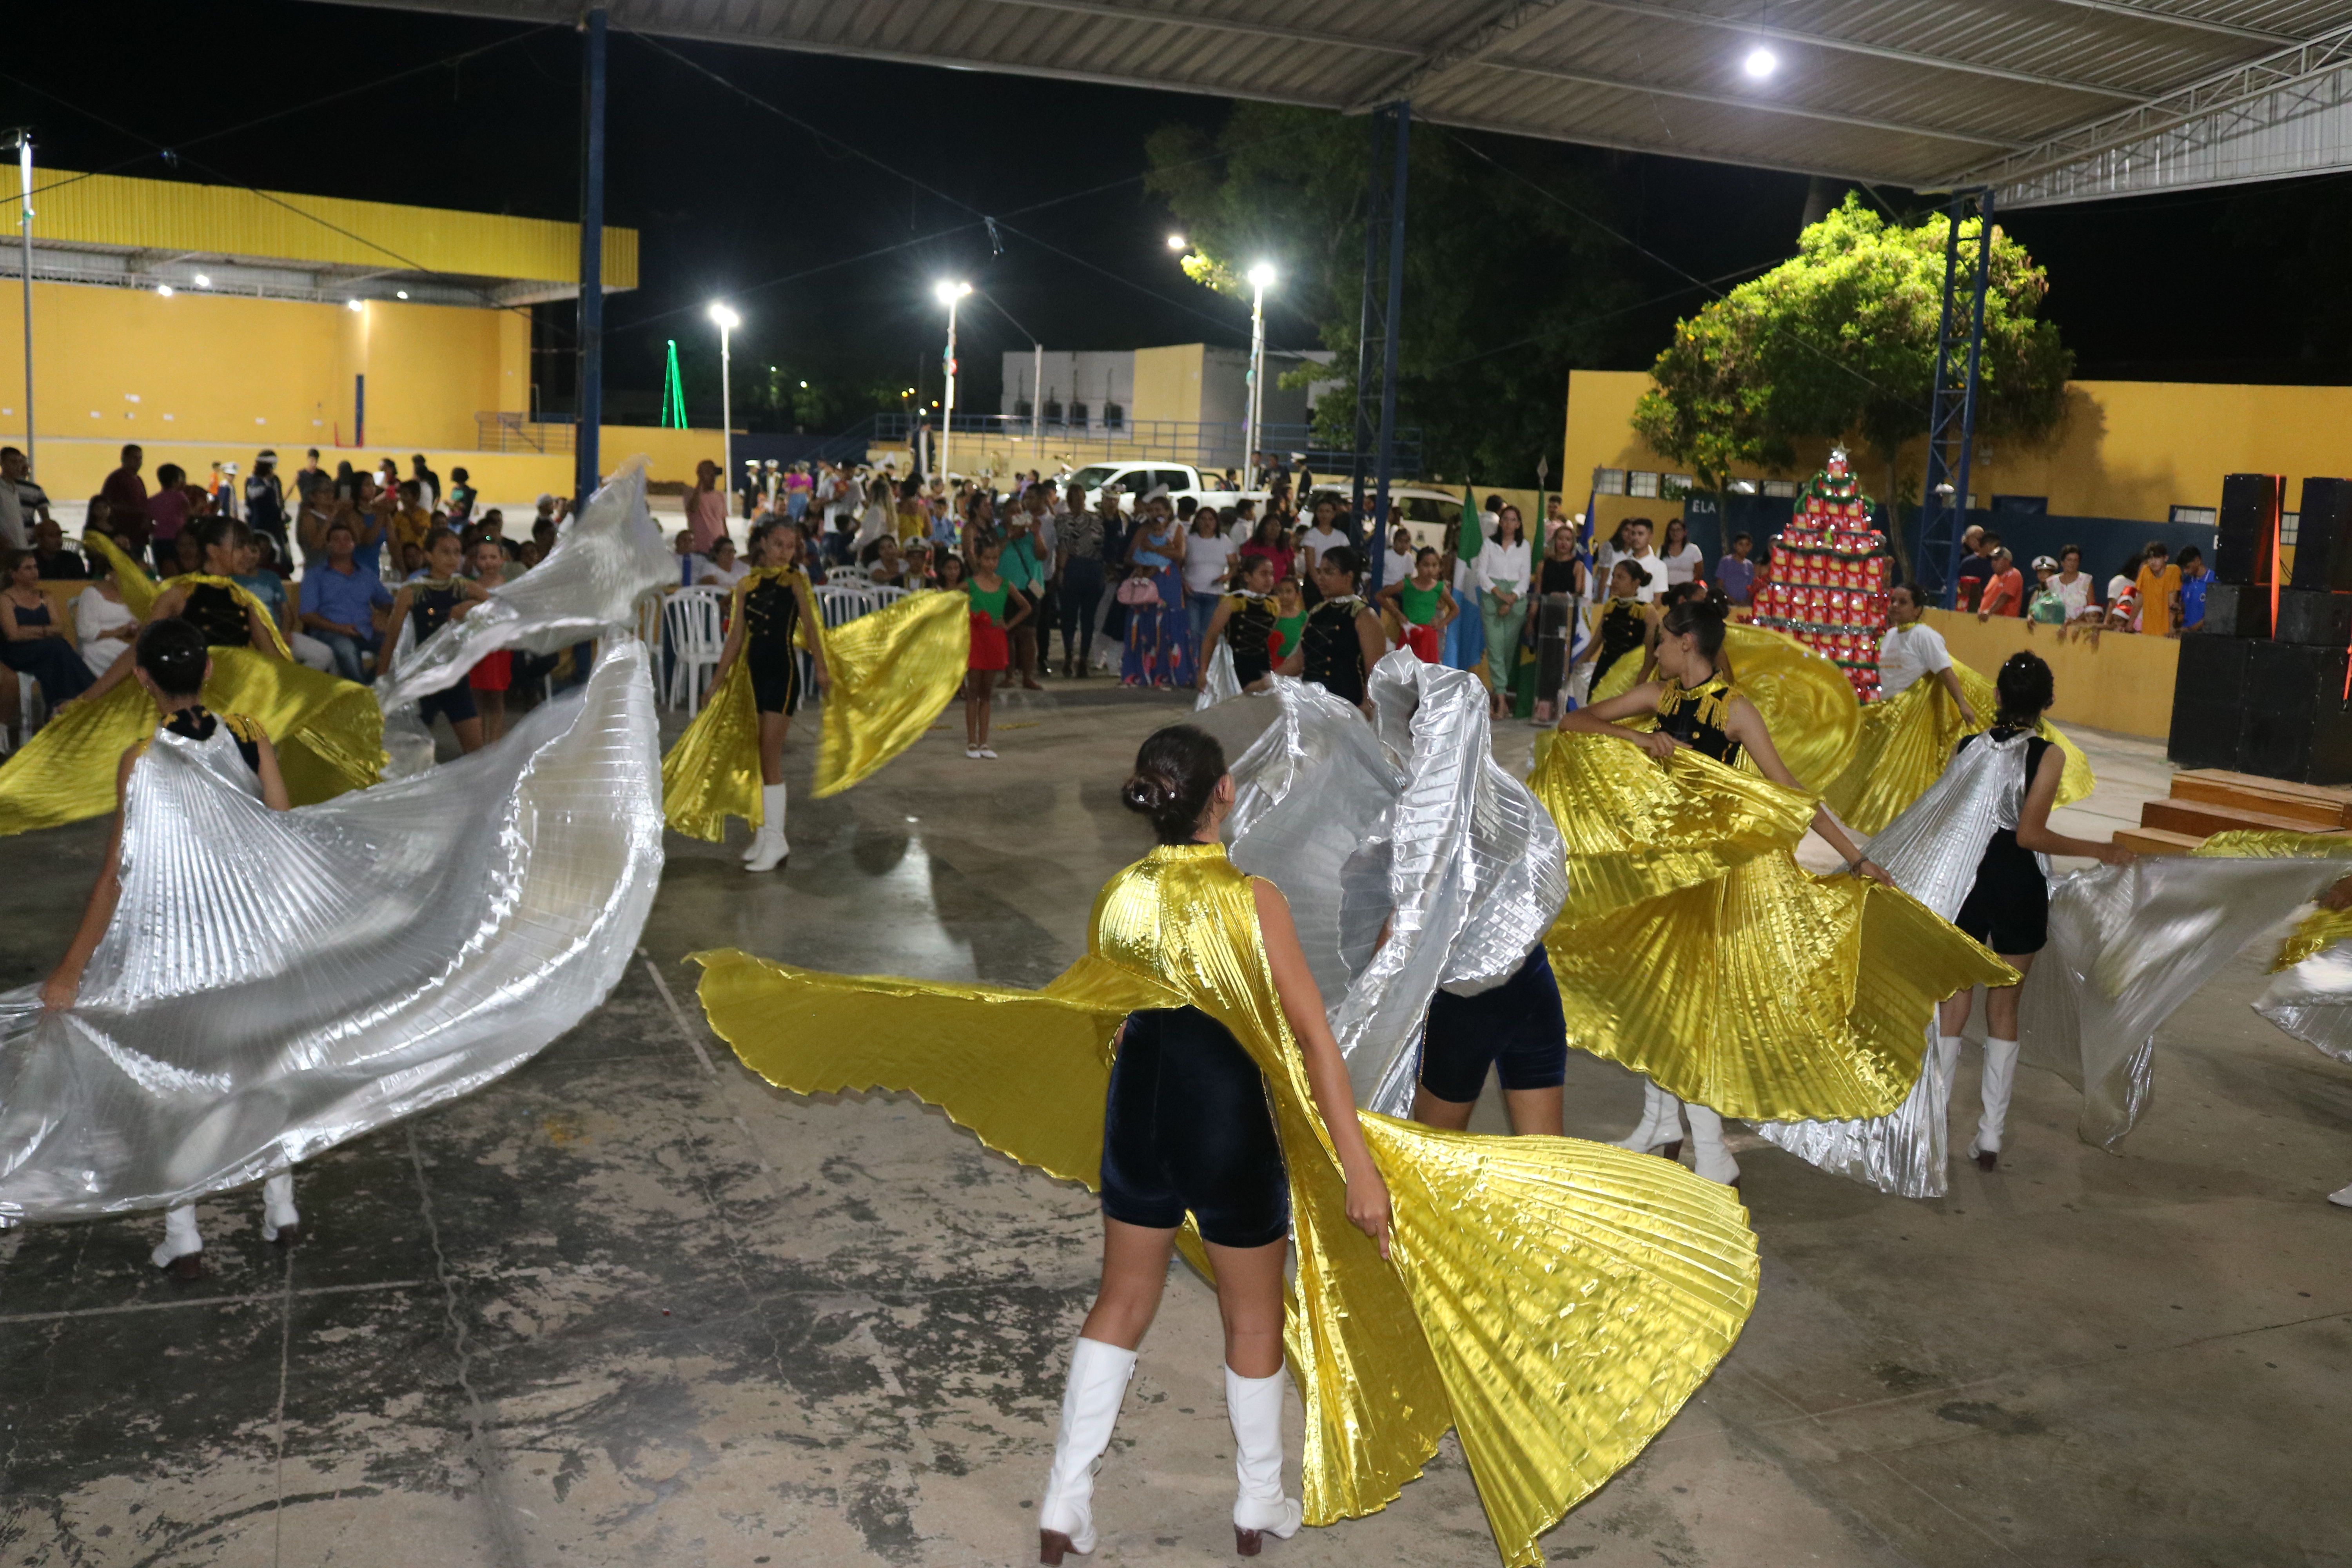 Cantata de Natal em Porto Murtinho emociona público e supera expectativas